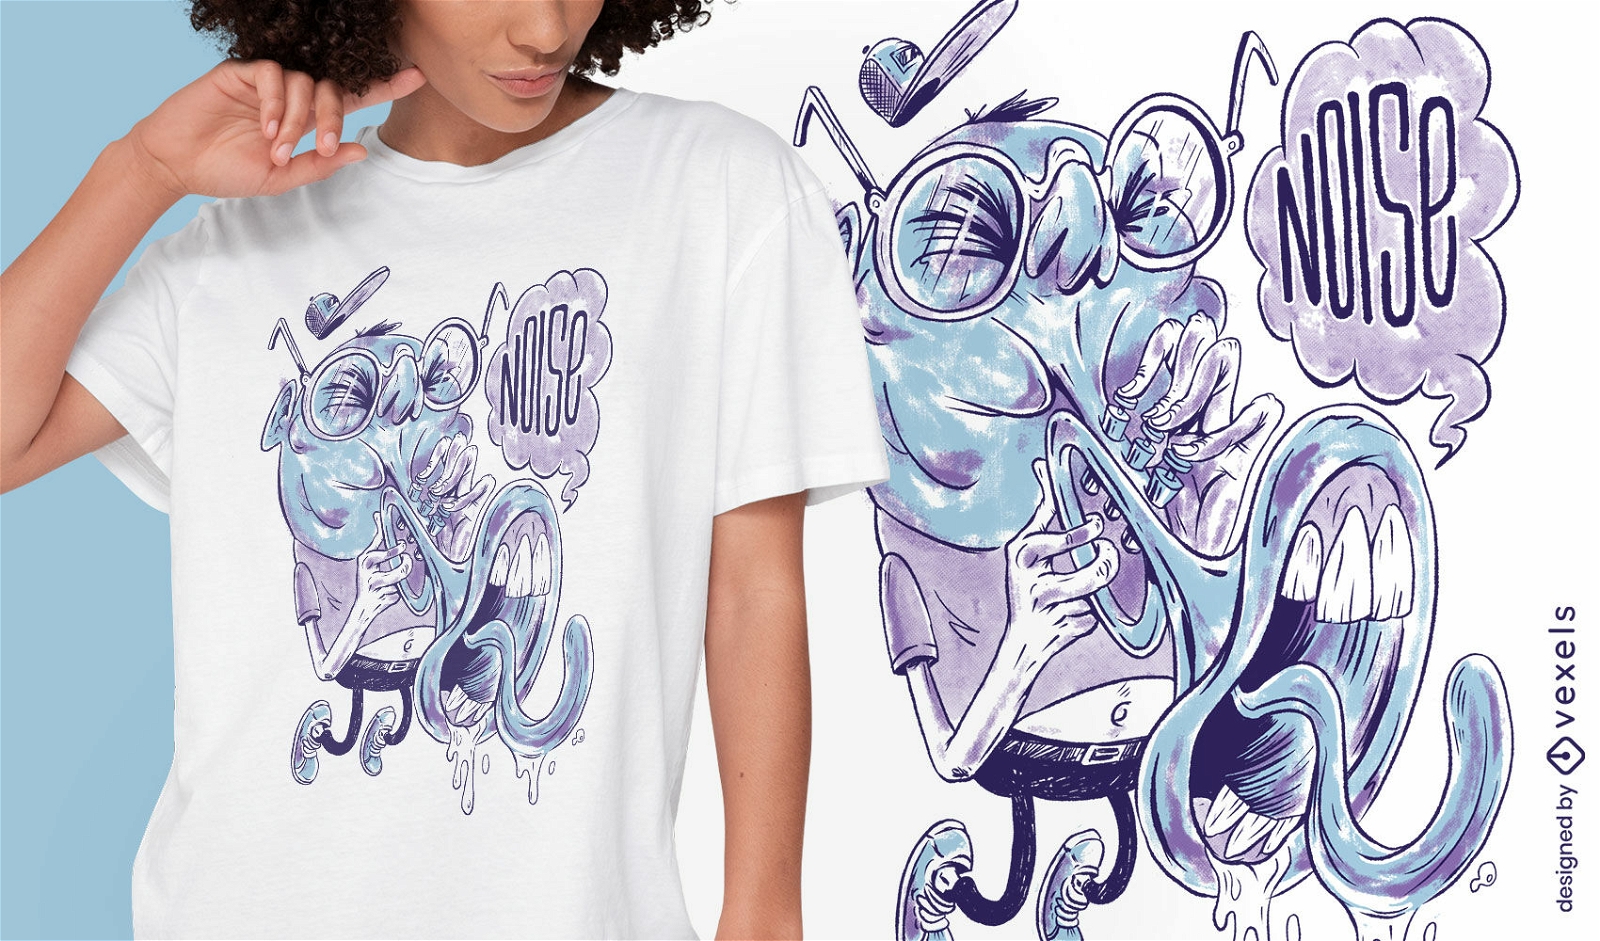 Trumpet player cartoon musician t-shirt design